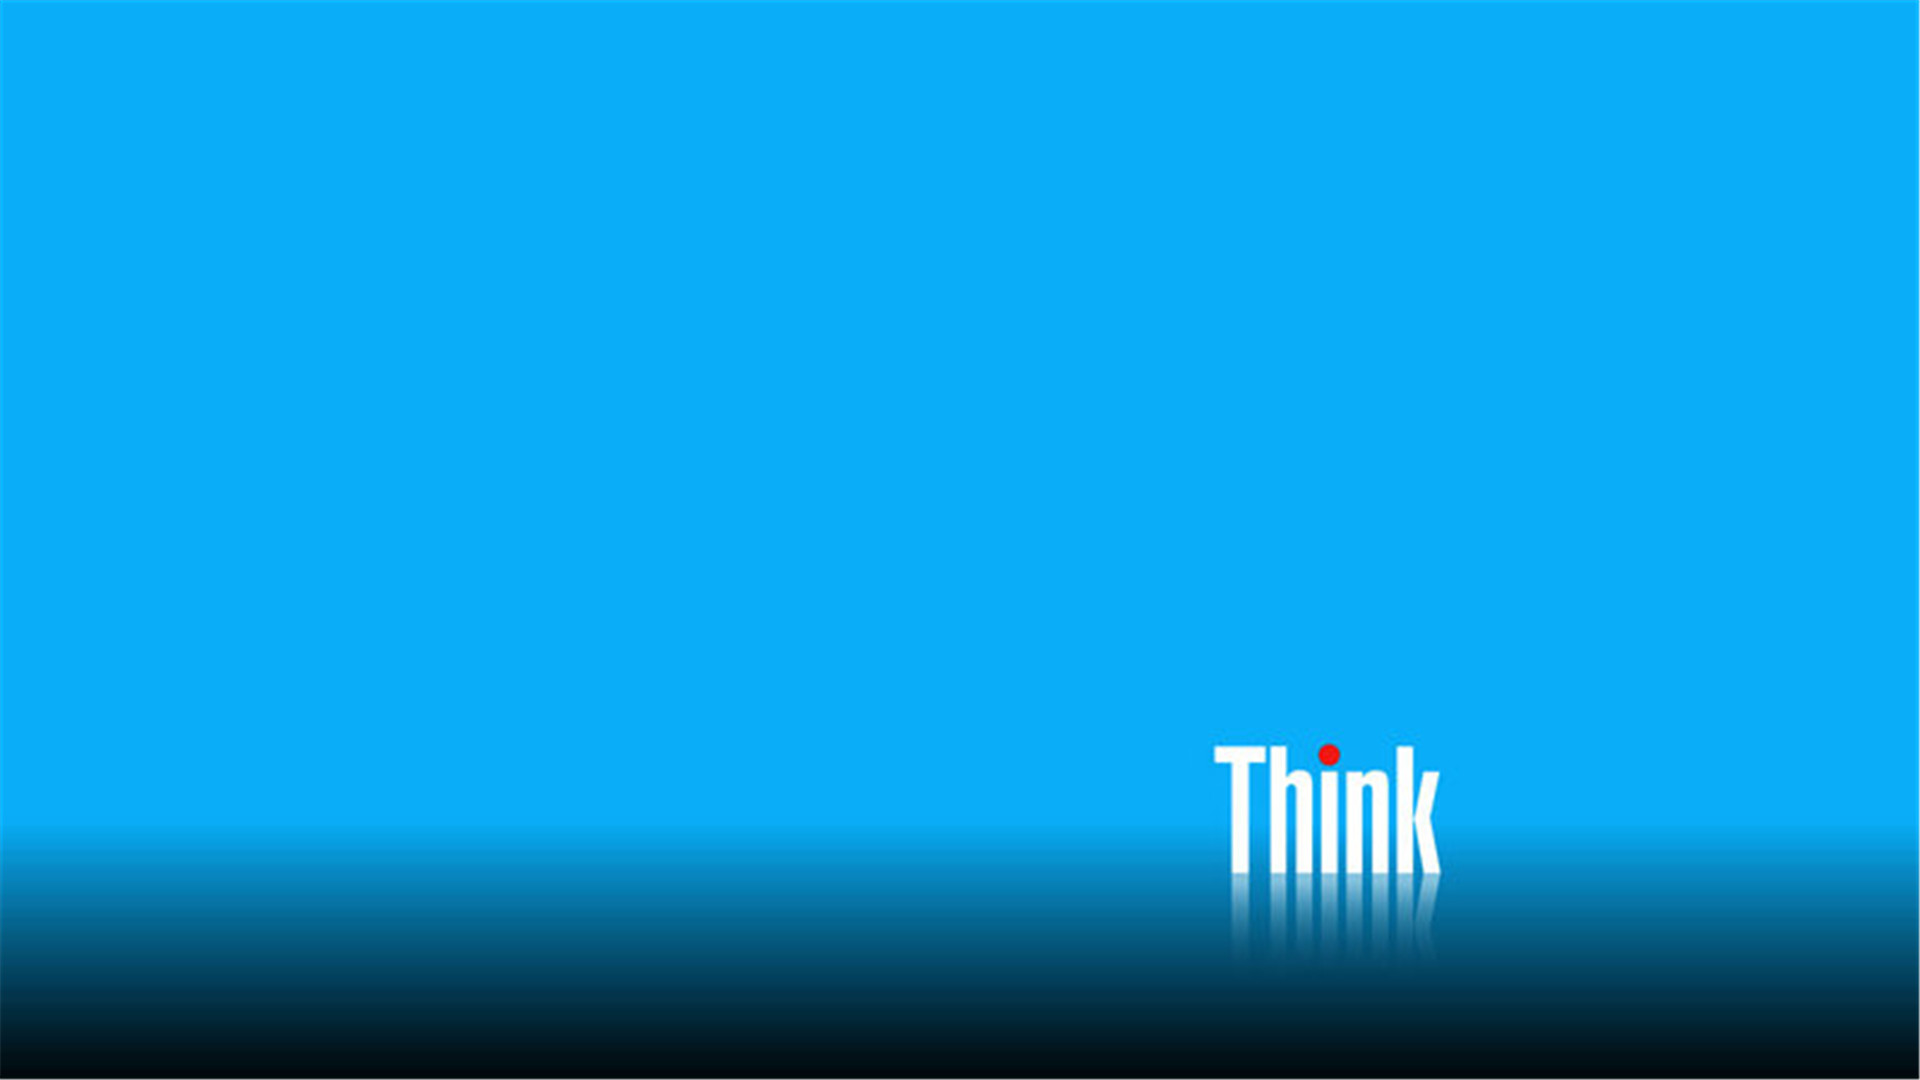 分享壁纸 重要的是全部1080p 还有经典thinkpad噢 Thinkpad 联想社区